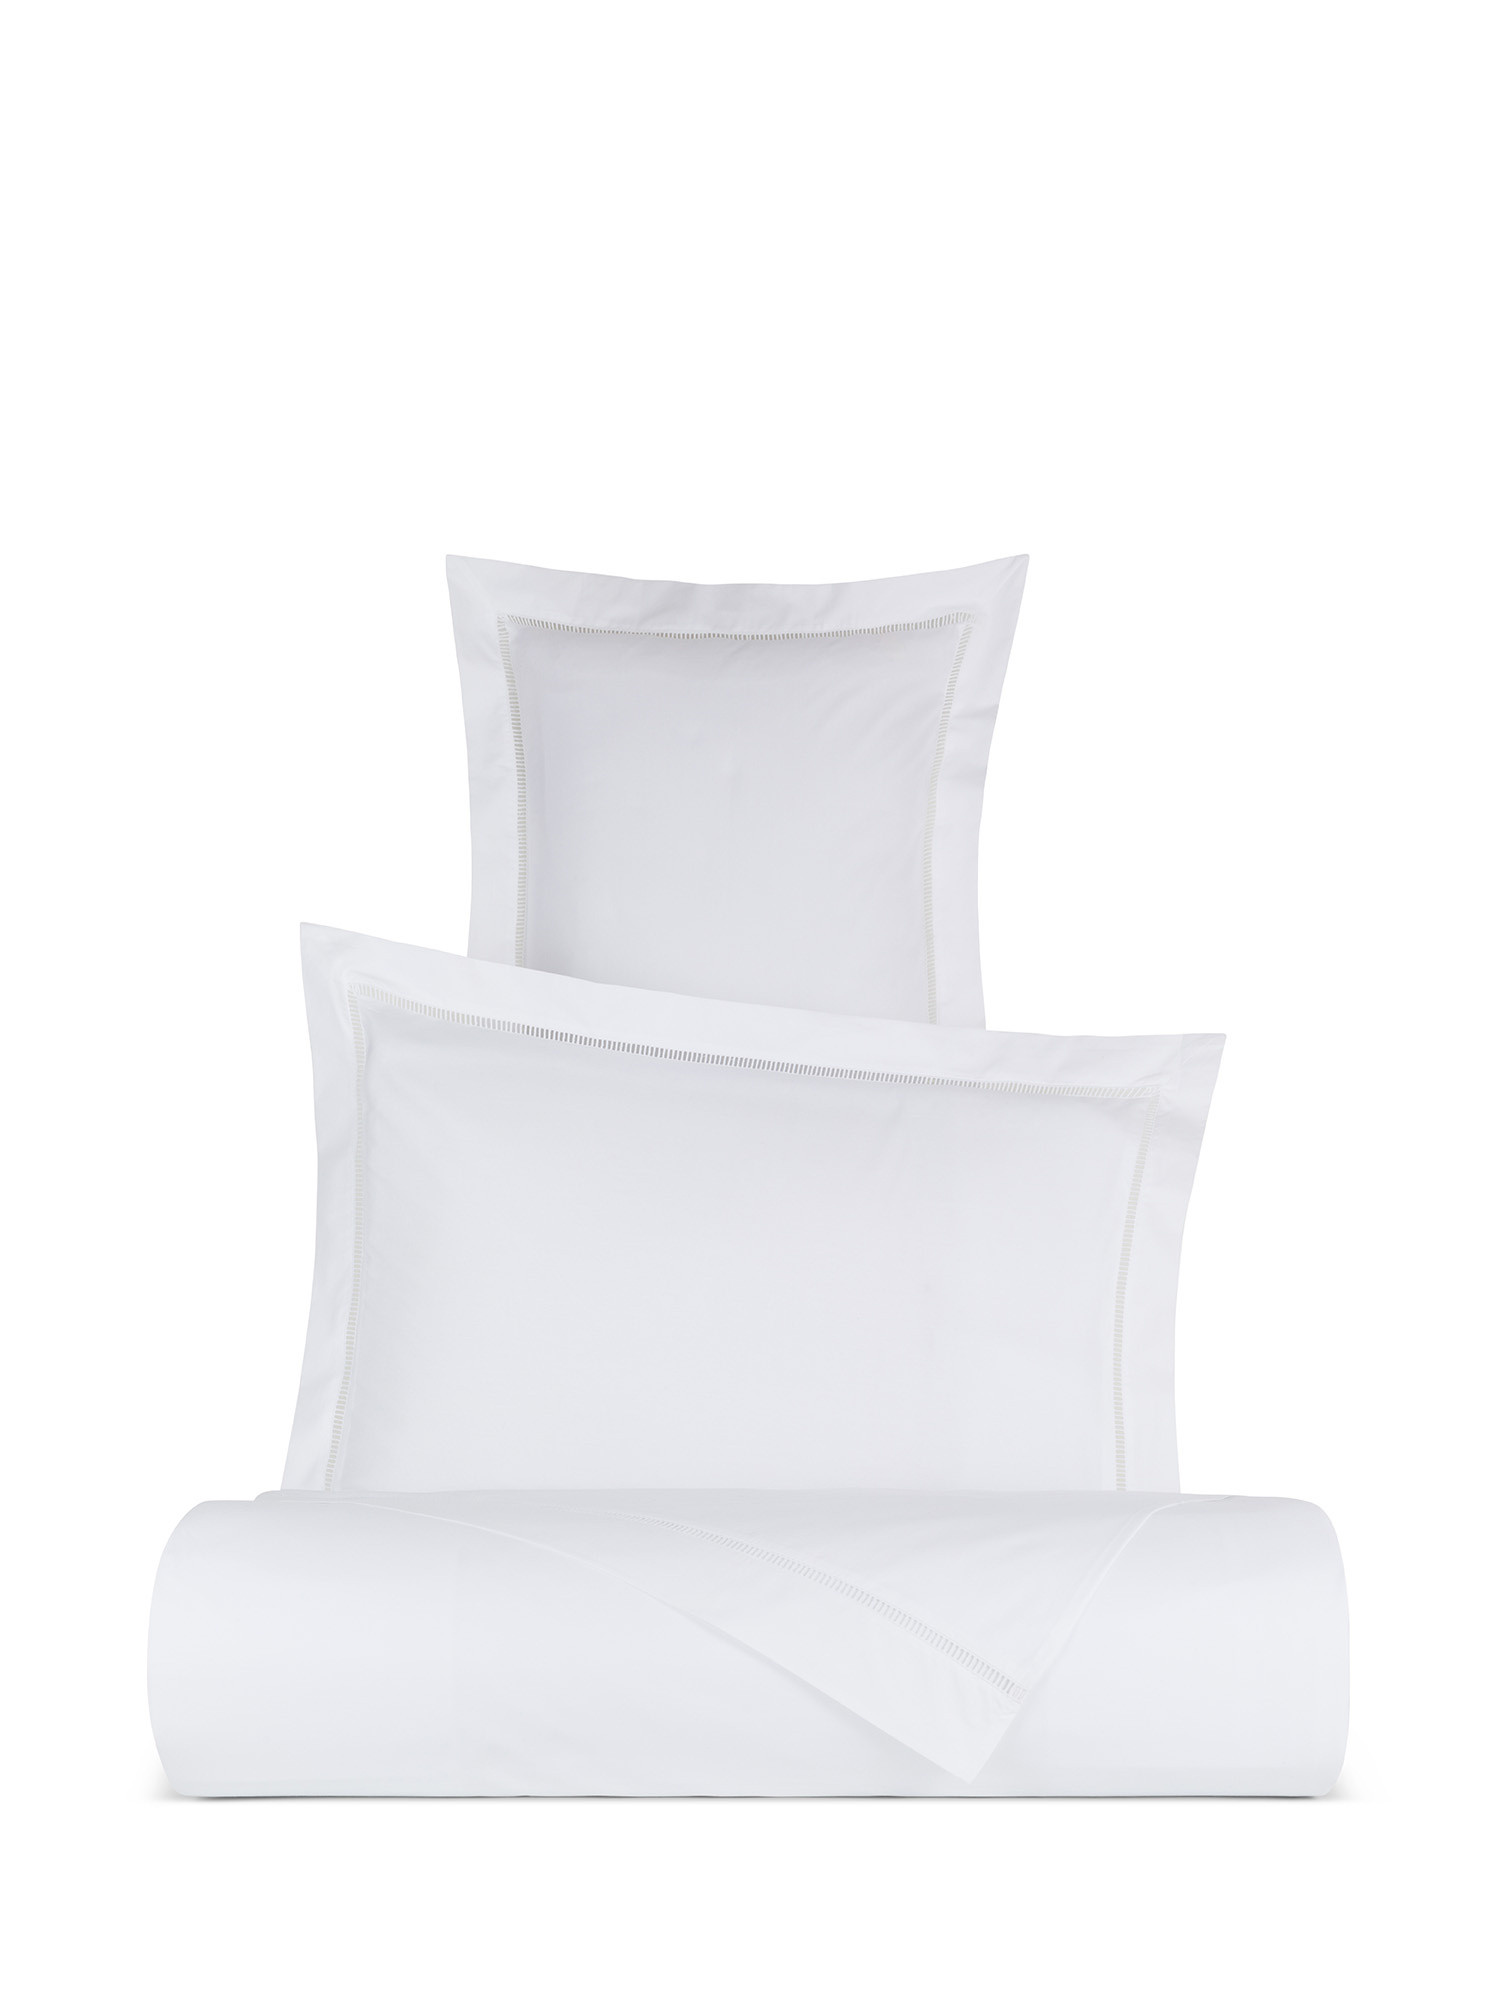 Pillowcase in fine cotton percale Portofino, White, large image number 2